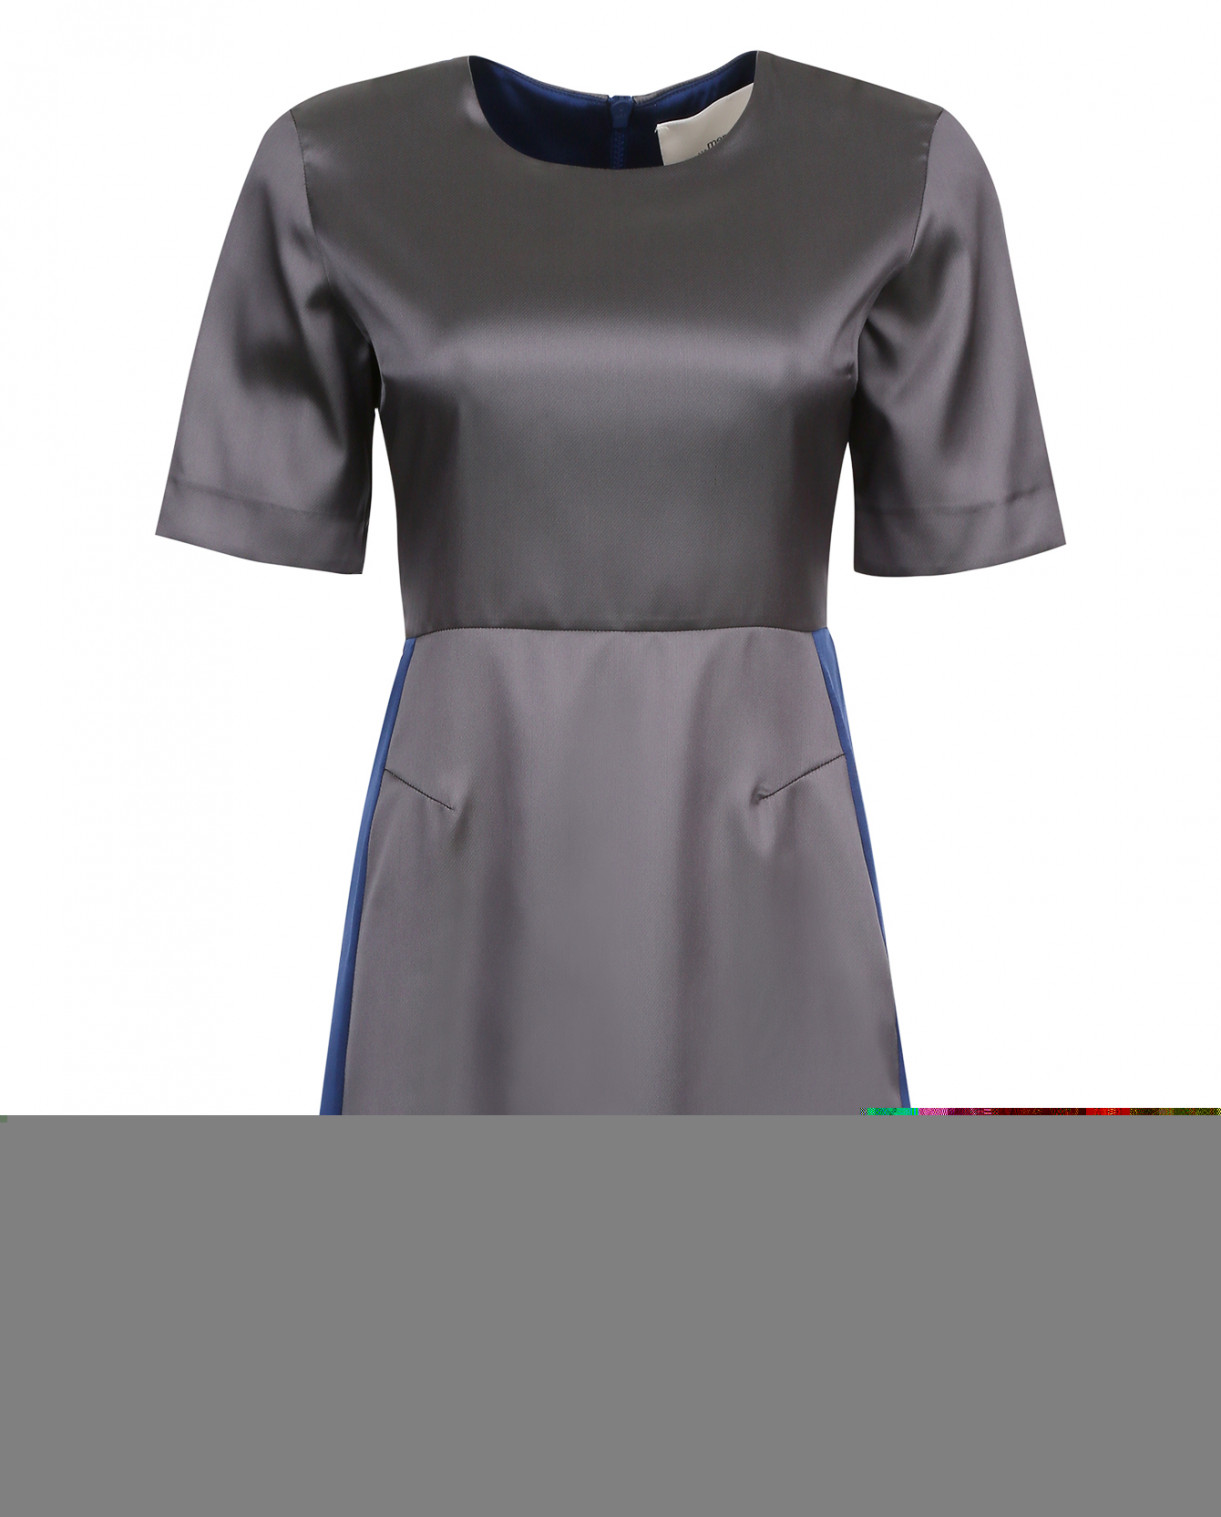 Мини-платье с молнией на спине Merсi  –  Общий вид  – Цвет:  Серый